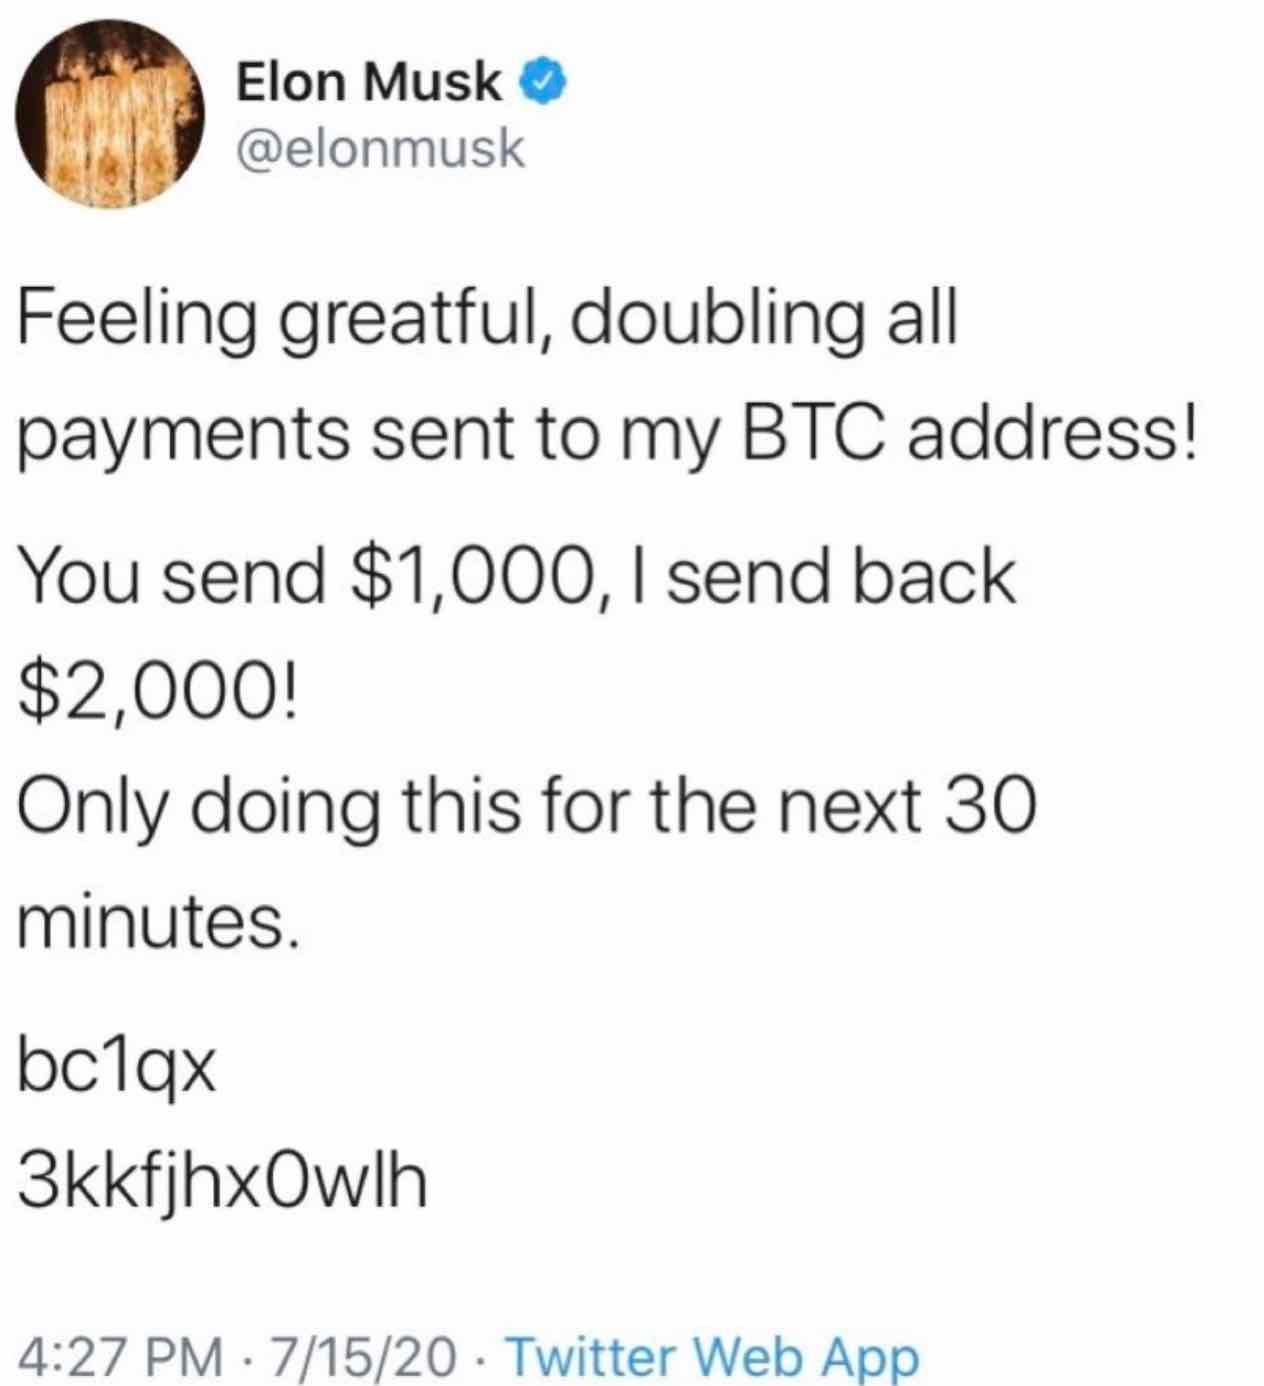 Hacked tweet from Elon Musk